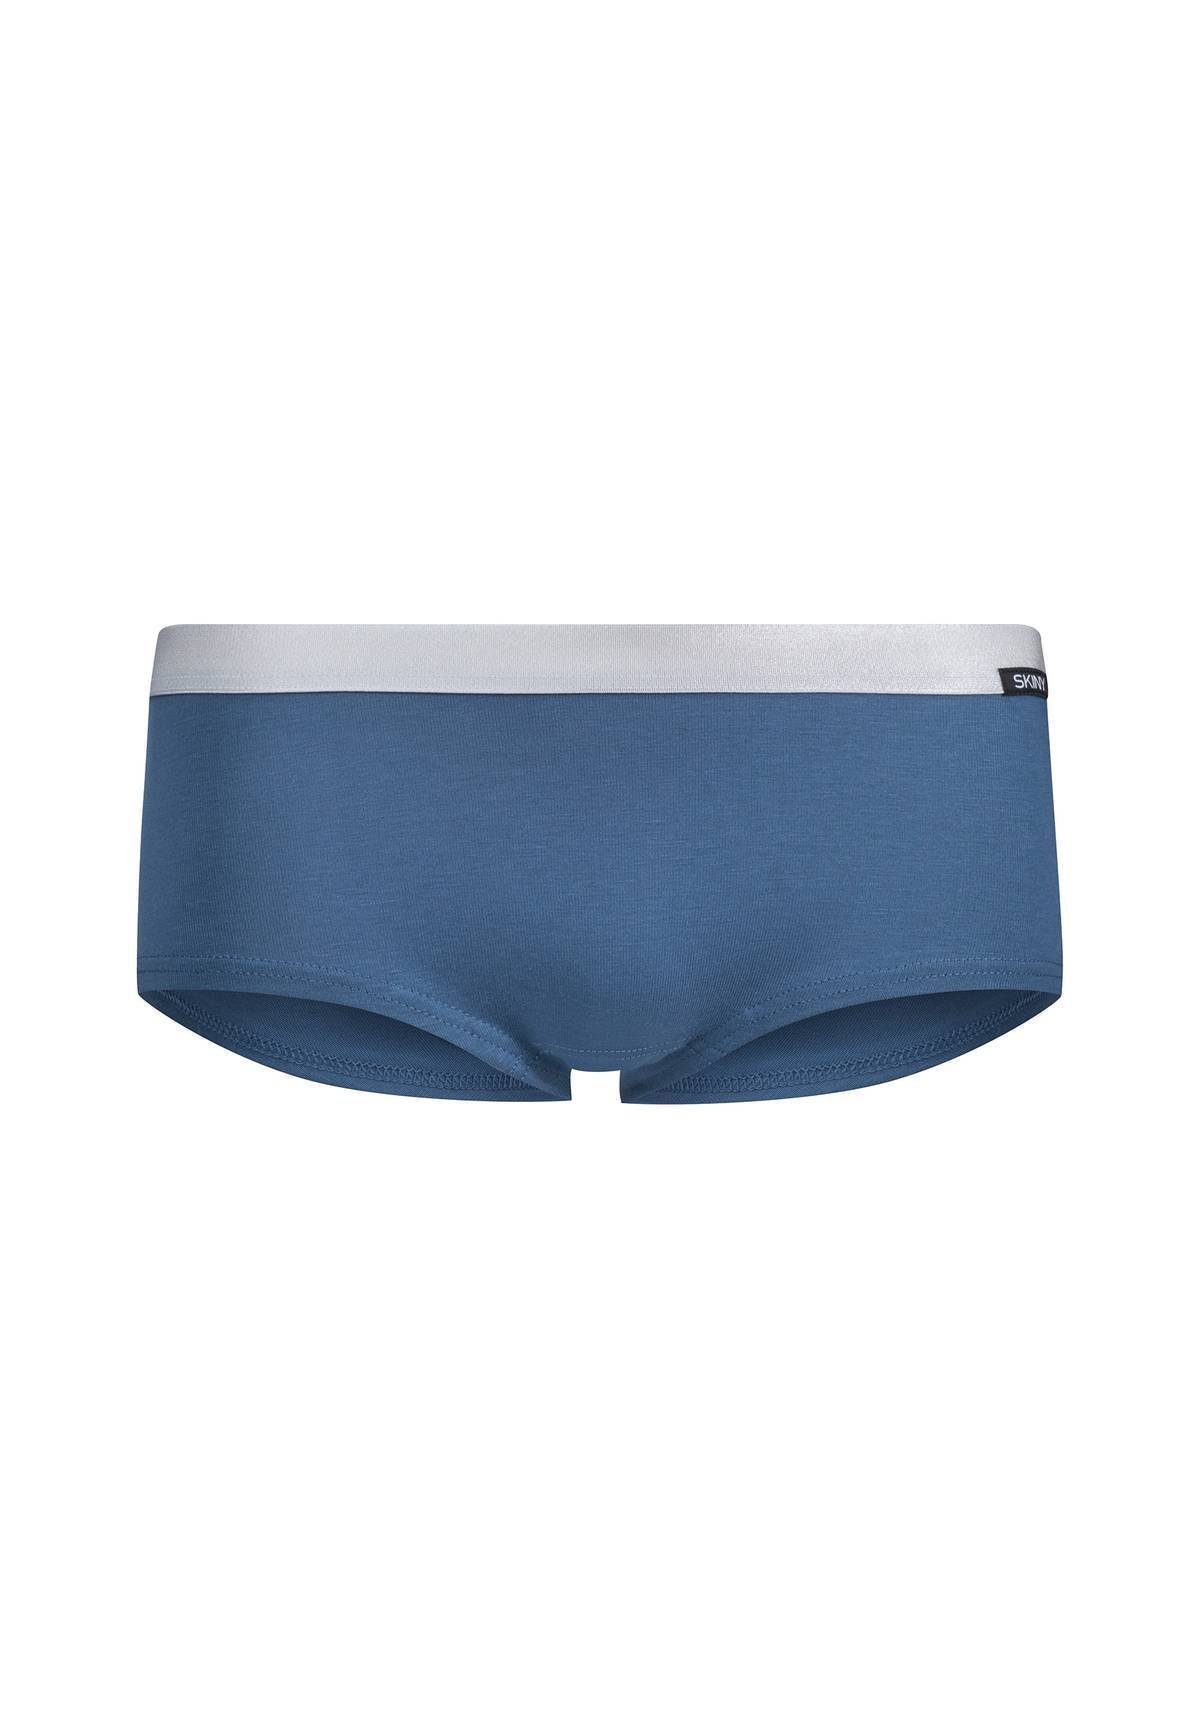 Unterhose, Briefs, Slip, Mädchen Pink/Blau 2er Skiny - Slip Cotton Pack